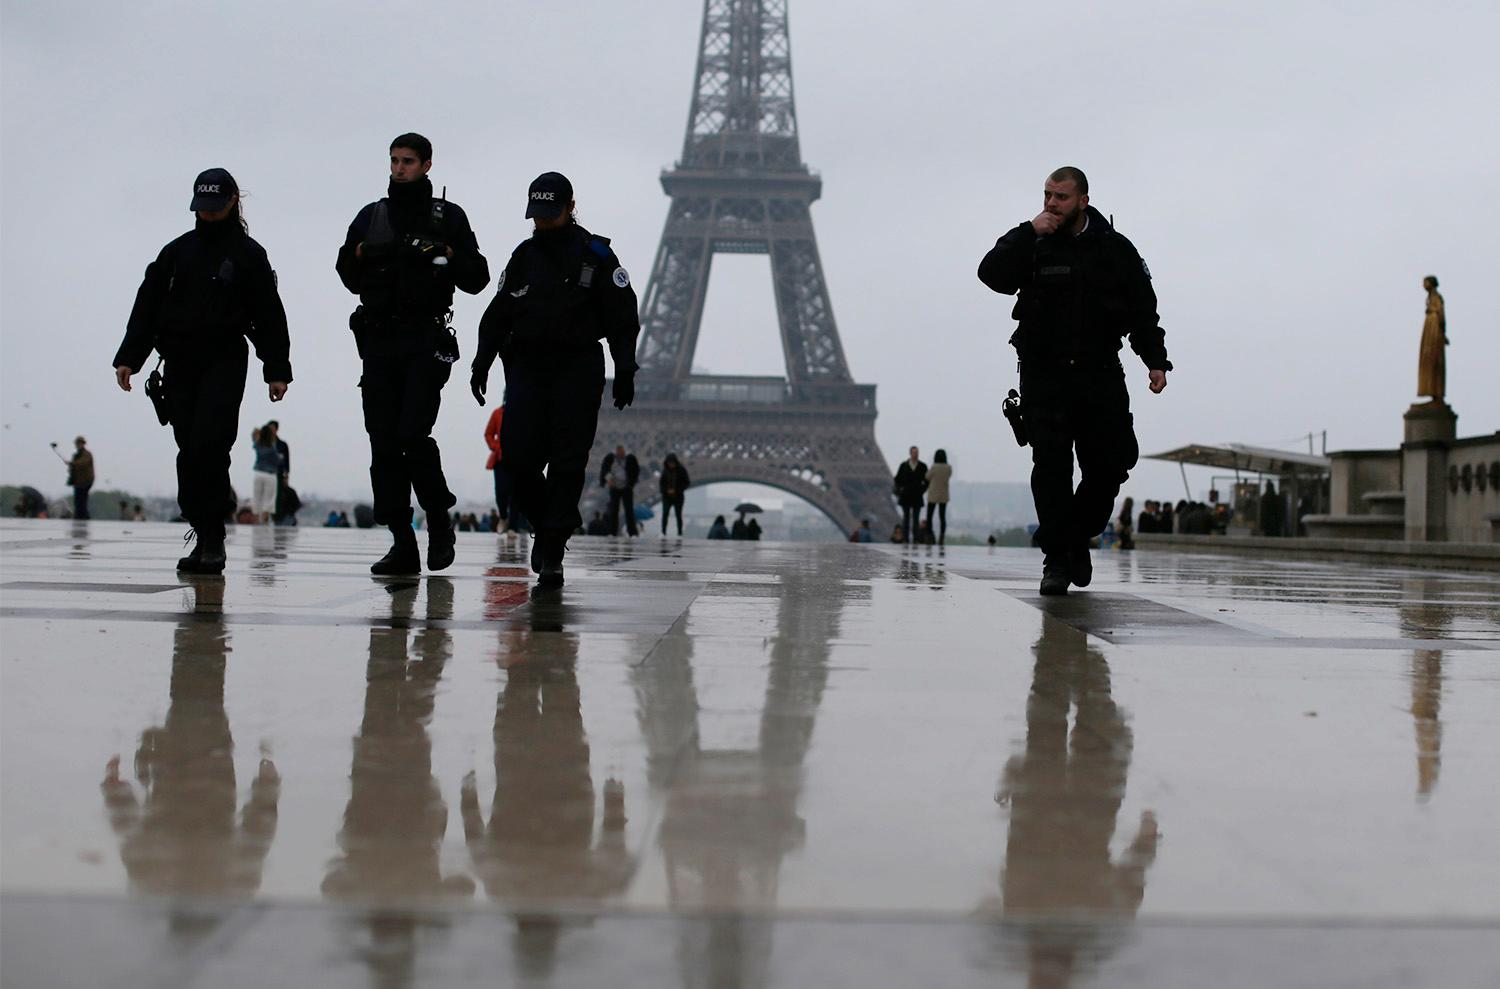 Bara i Paris har 12 000 extra poliser satts in för att valdagen ska gå säkert till. 